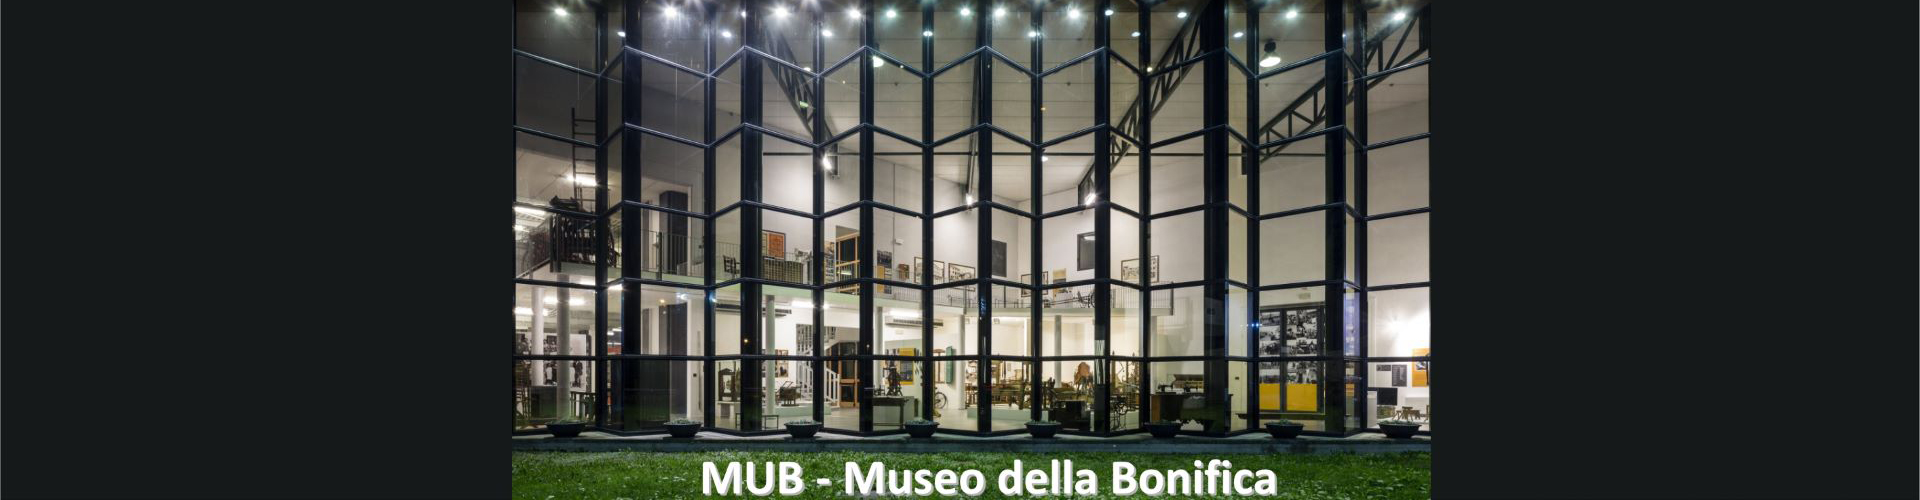 Gita scolastica al MUB - Museo della Bonifica - Venezia